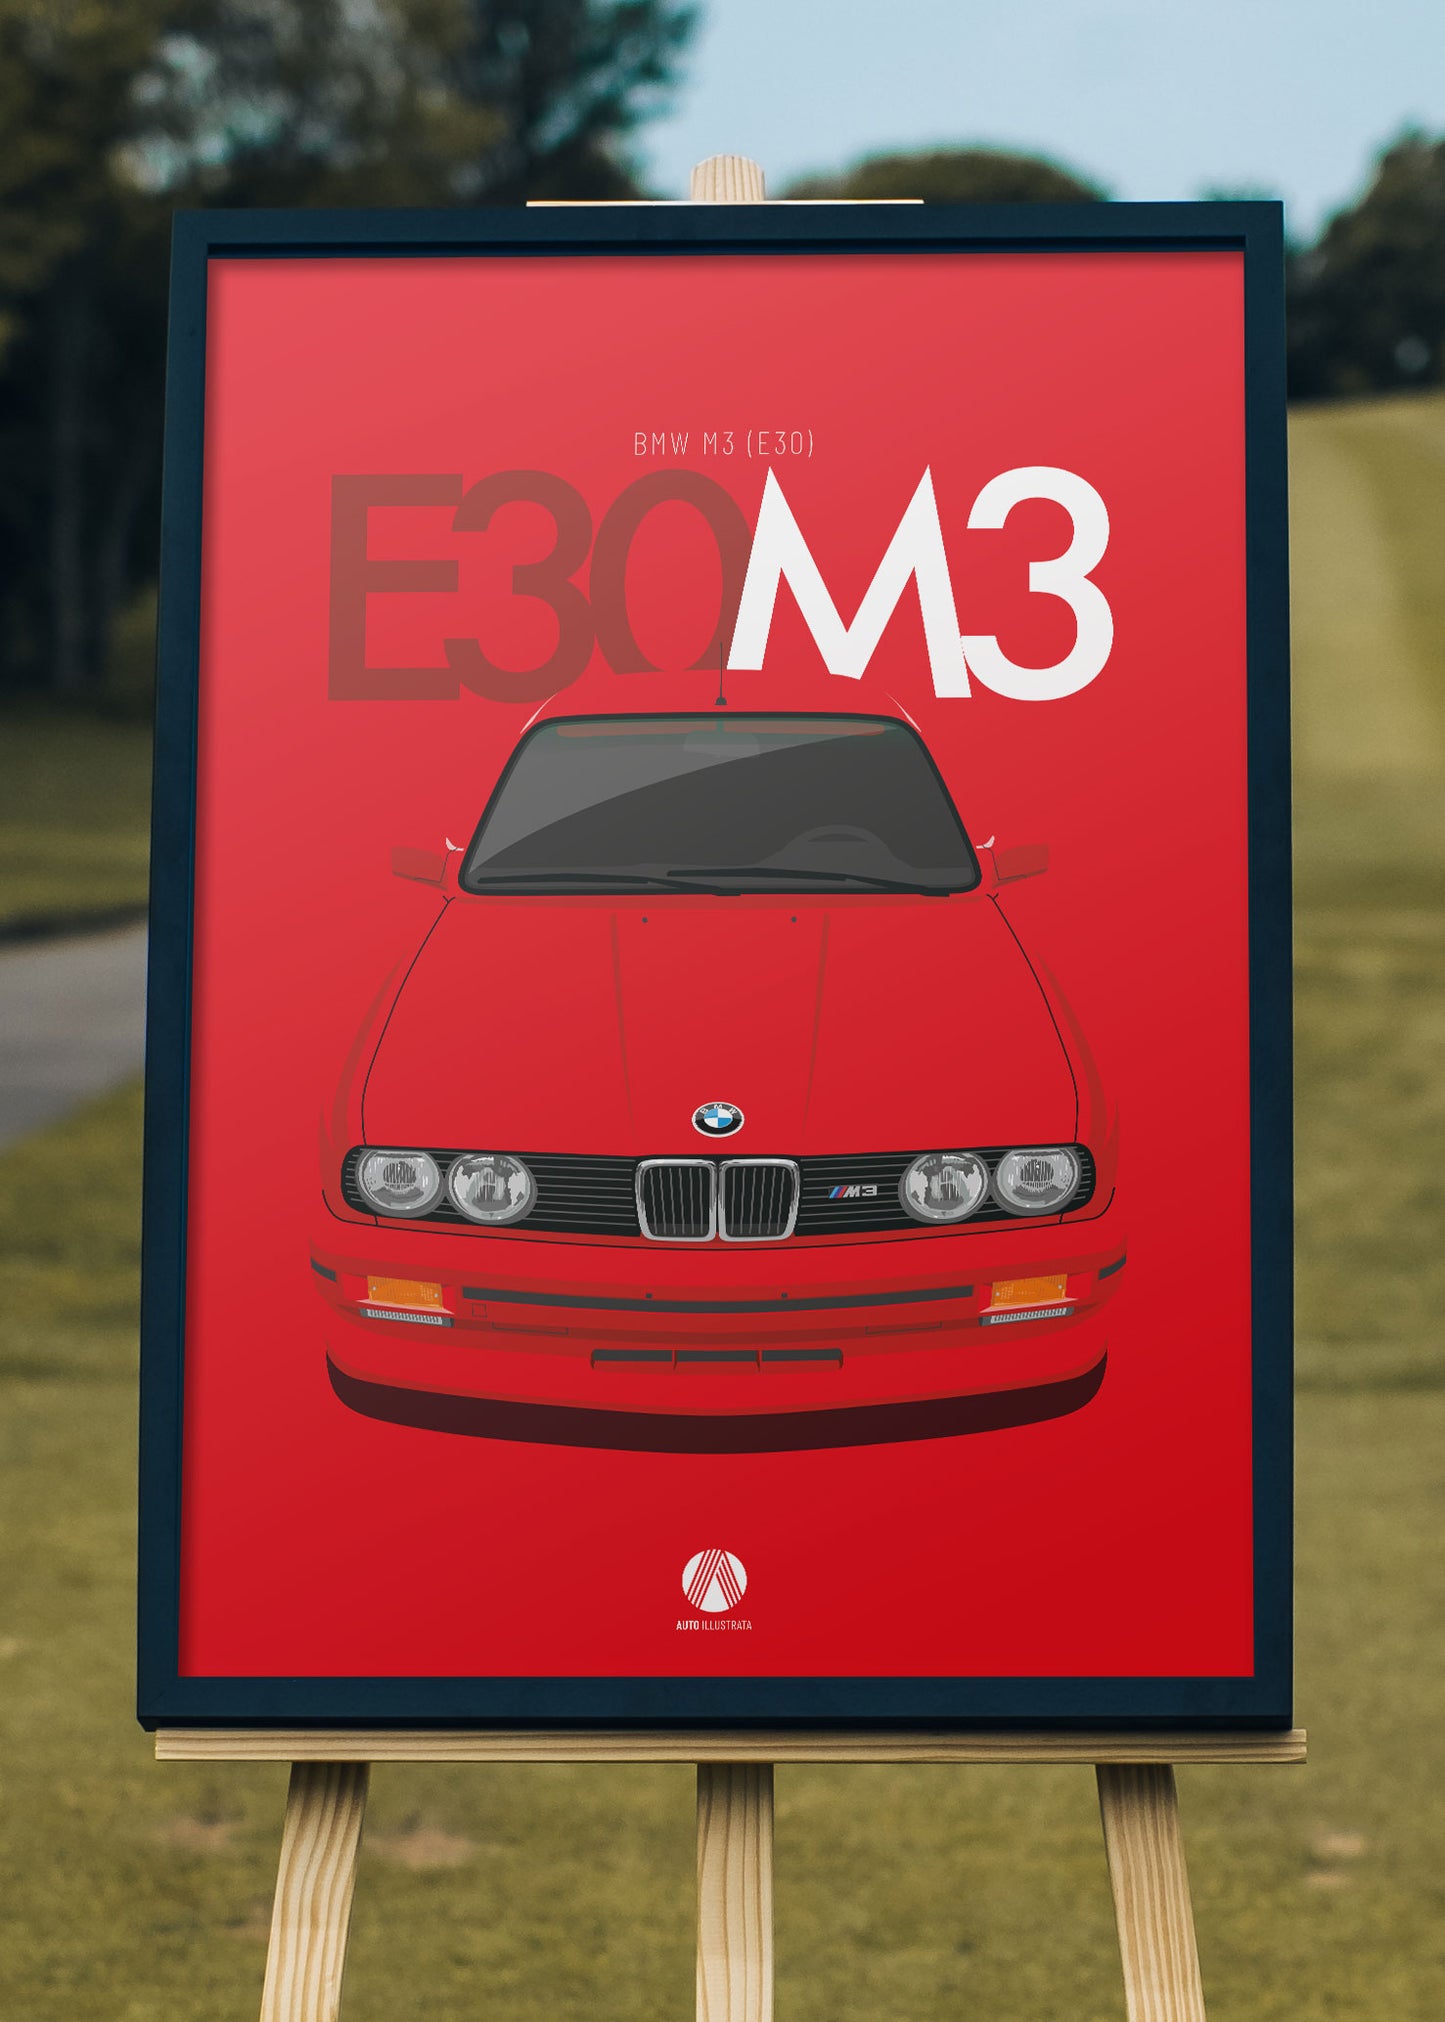 1990 BMW E30 M3 Brilliant Red 308 - poster print